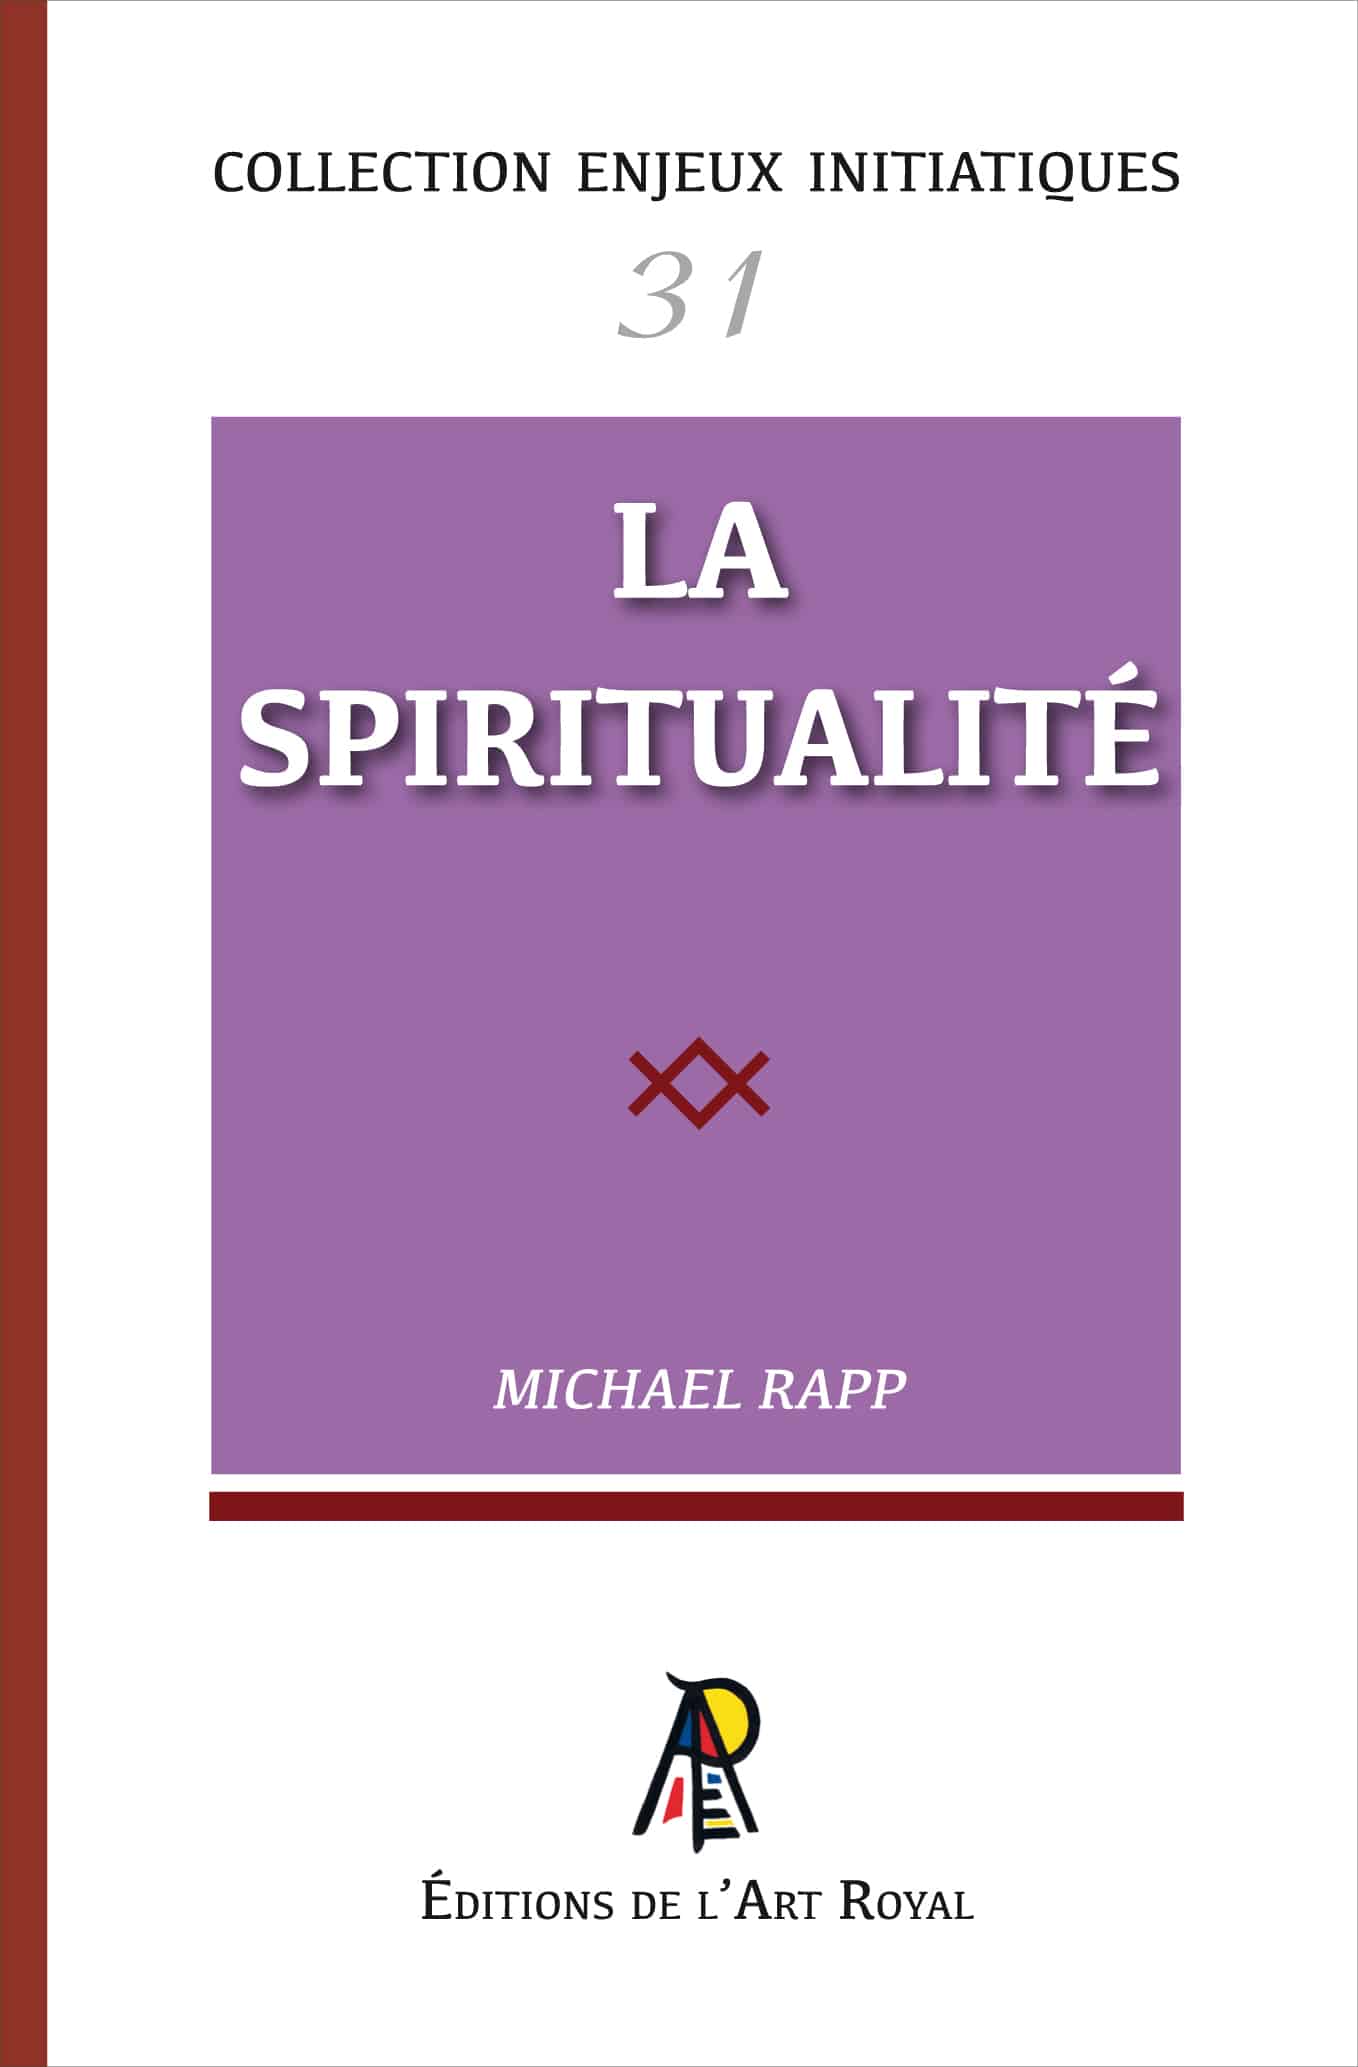 La spiritualité, Michael Rapp